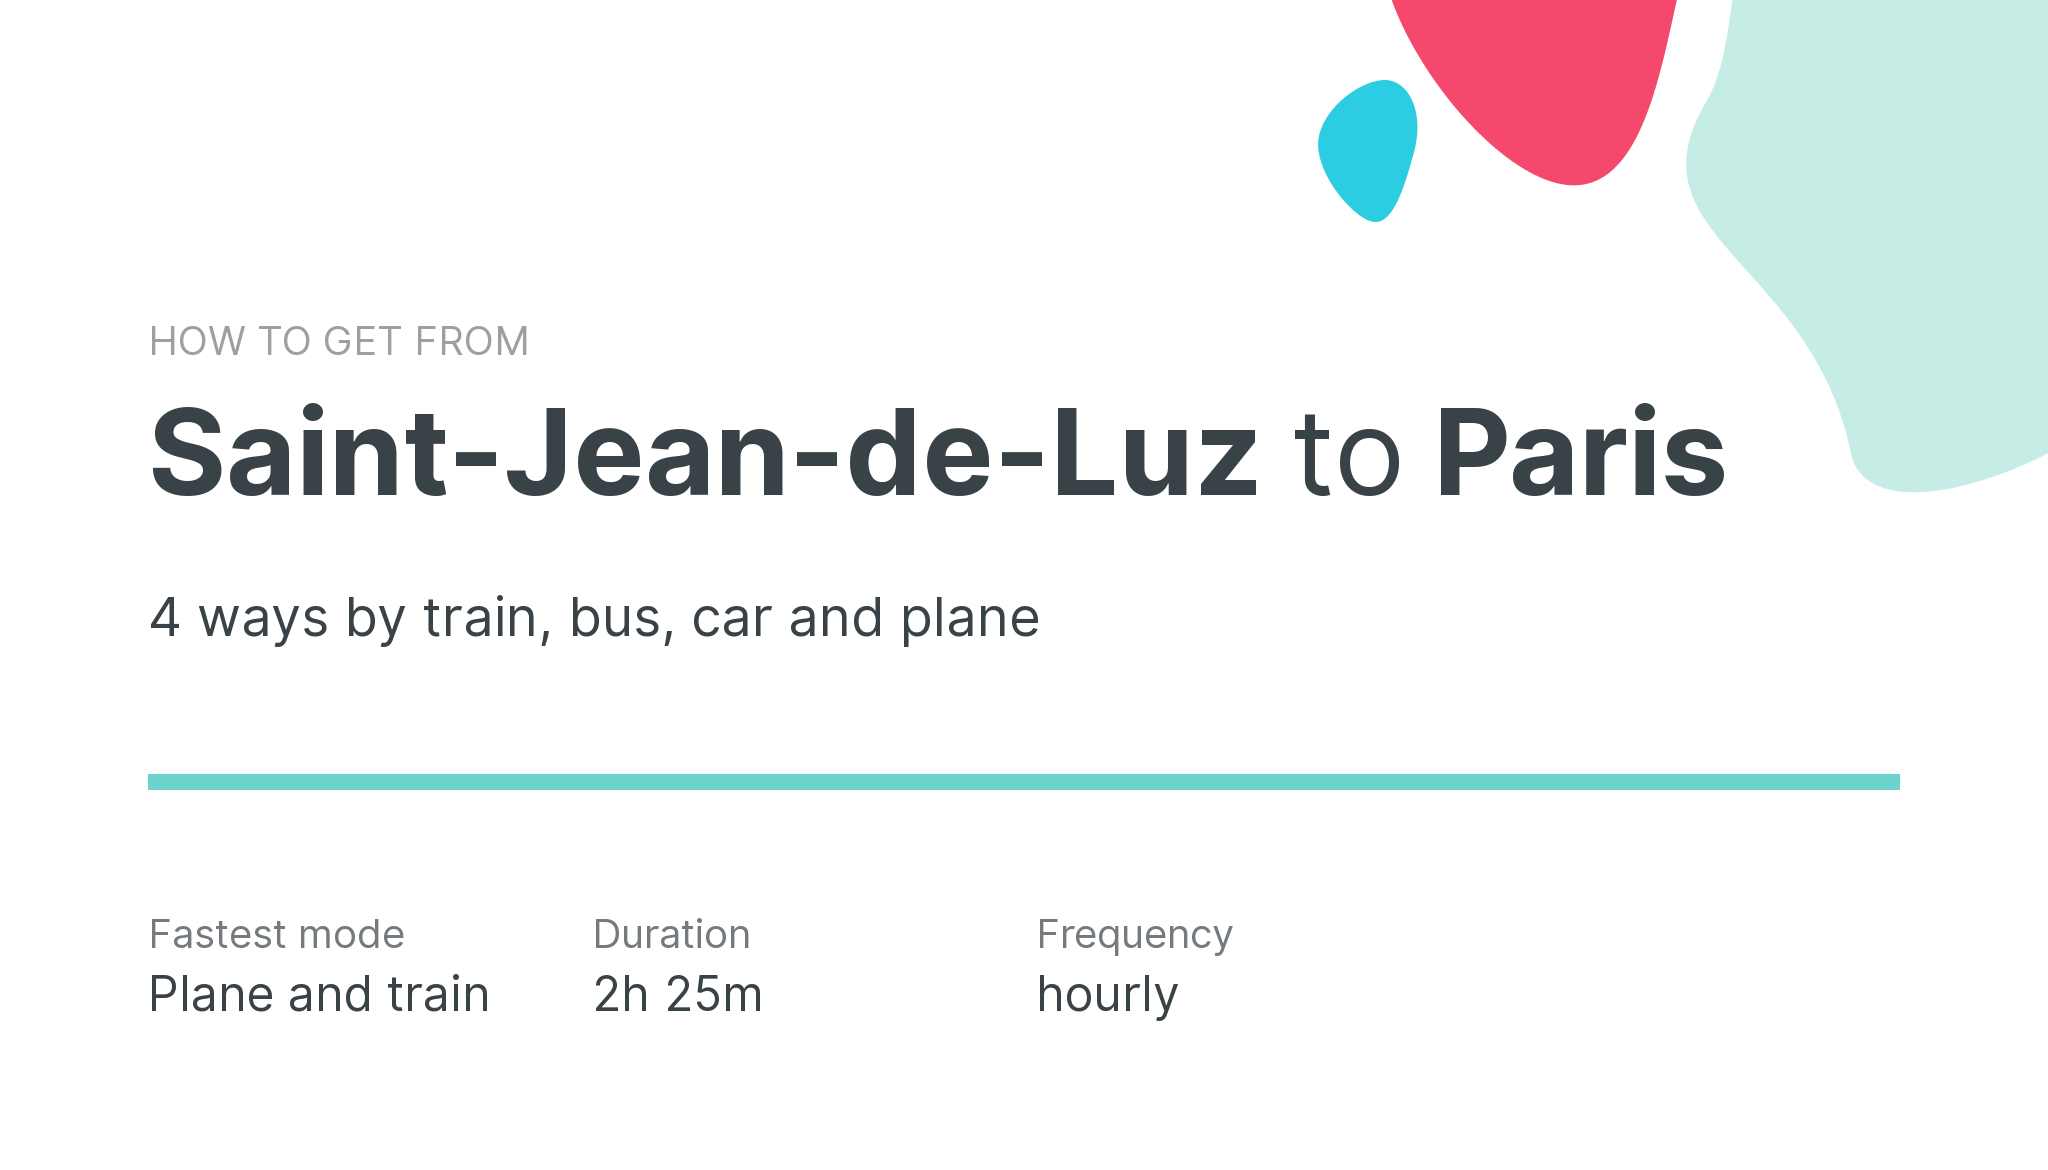 How do I get from Saint-Jean-de-Luz to Paris